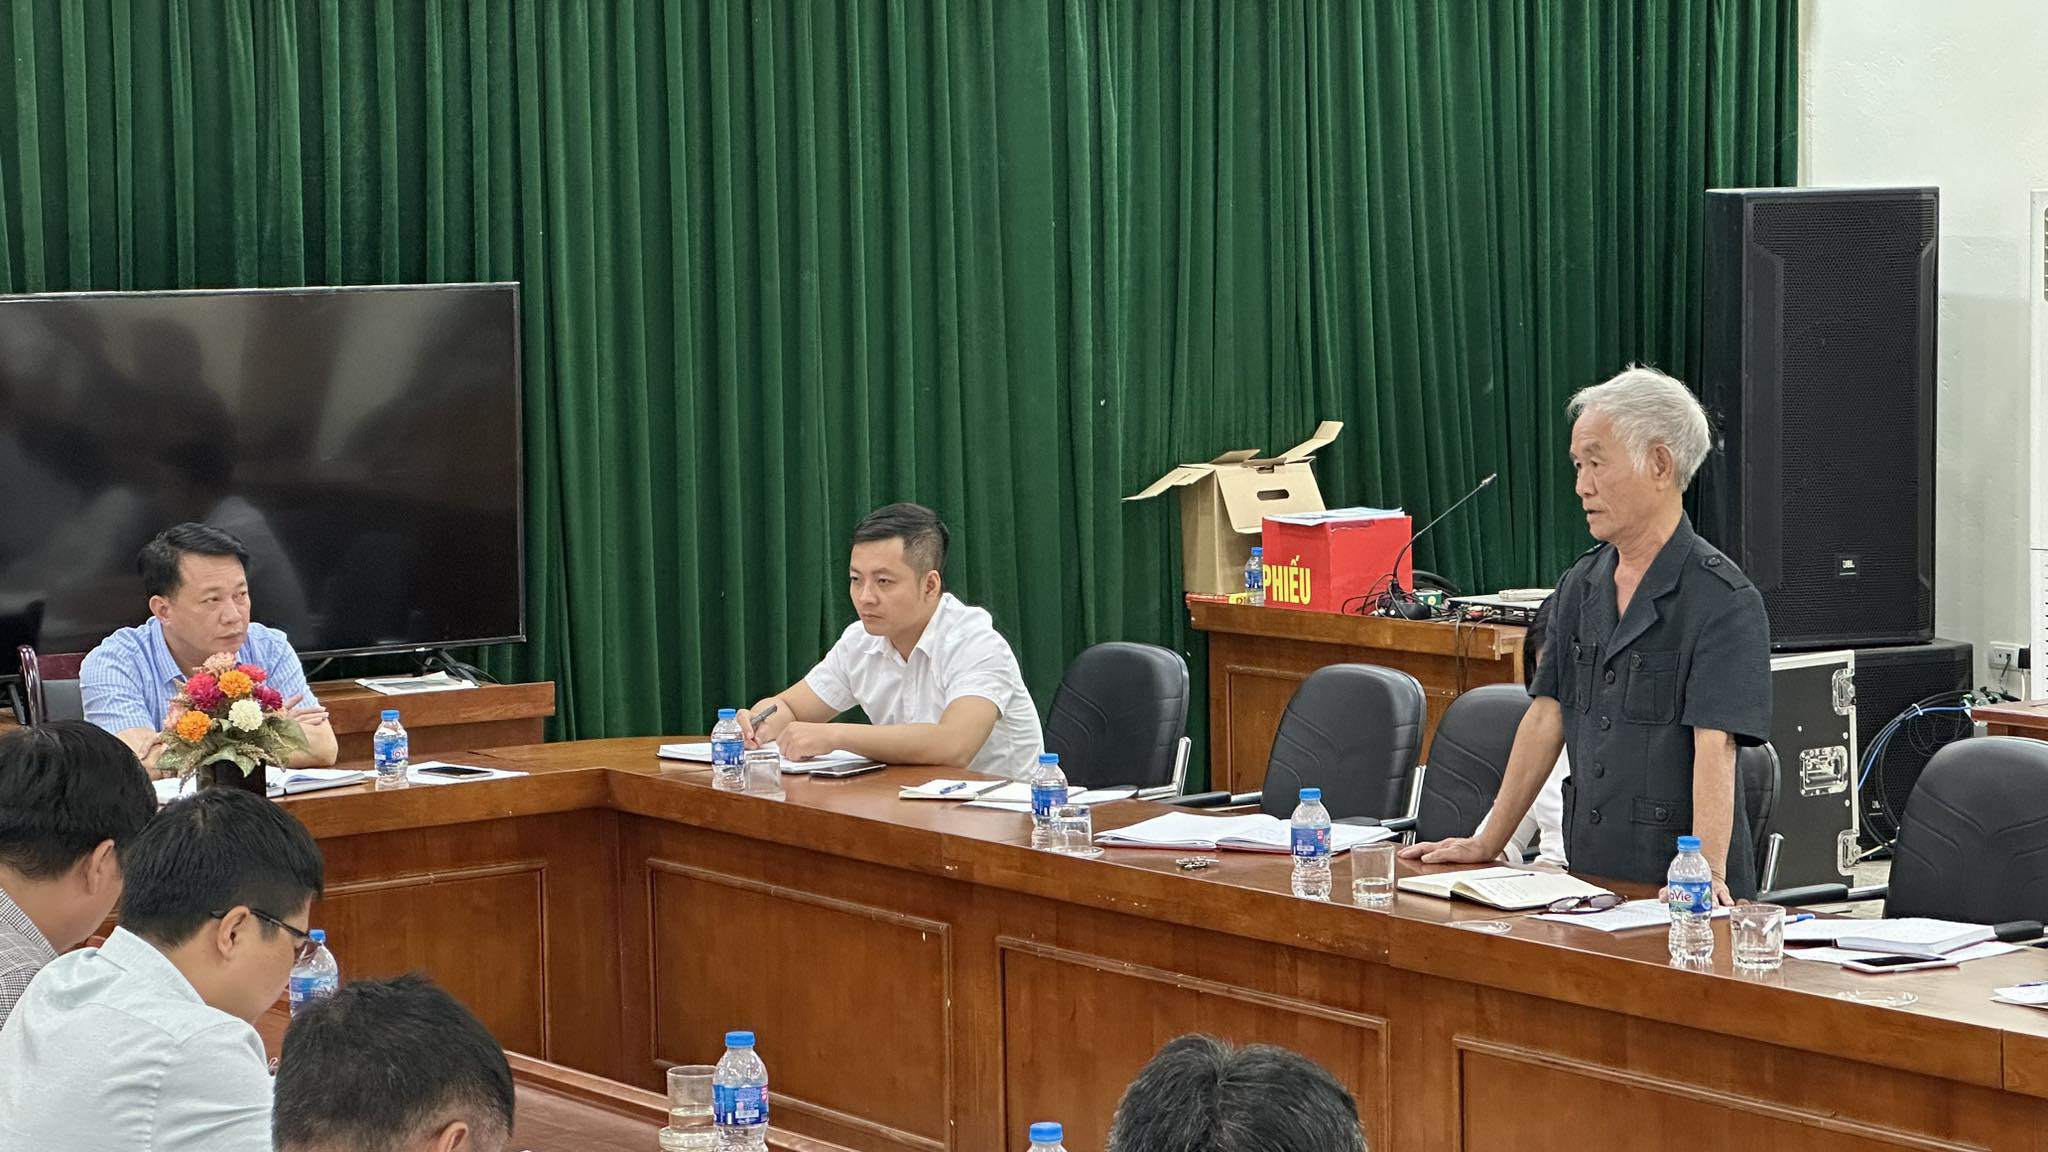 Phó chủ tịch UBND huyện Thanh Oai Nguyễn Trọng Khiển họp khẩn với các đơn vị liên quan và cư dân khu đô thị Thanh Hà về vấn đề chất lượng nước sạch không đảm bảo và mất nước.